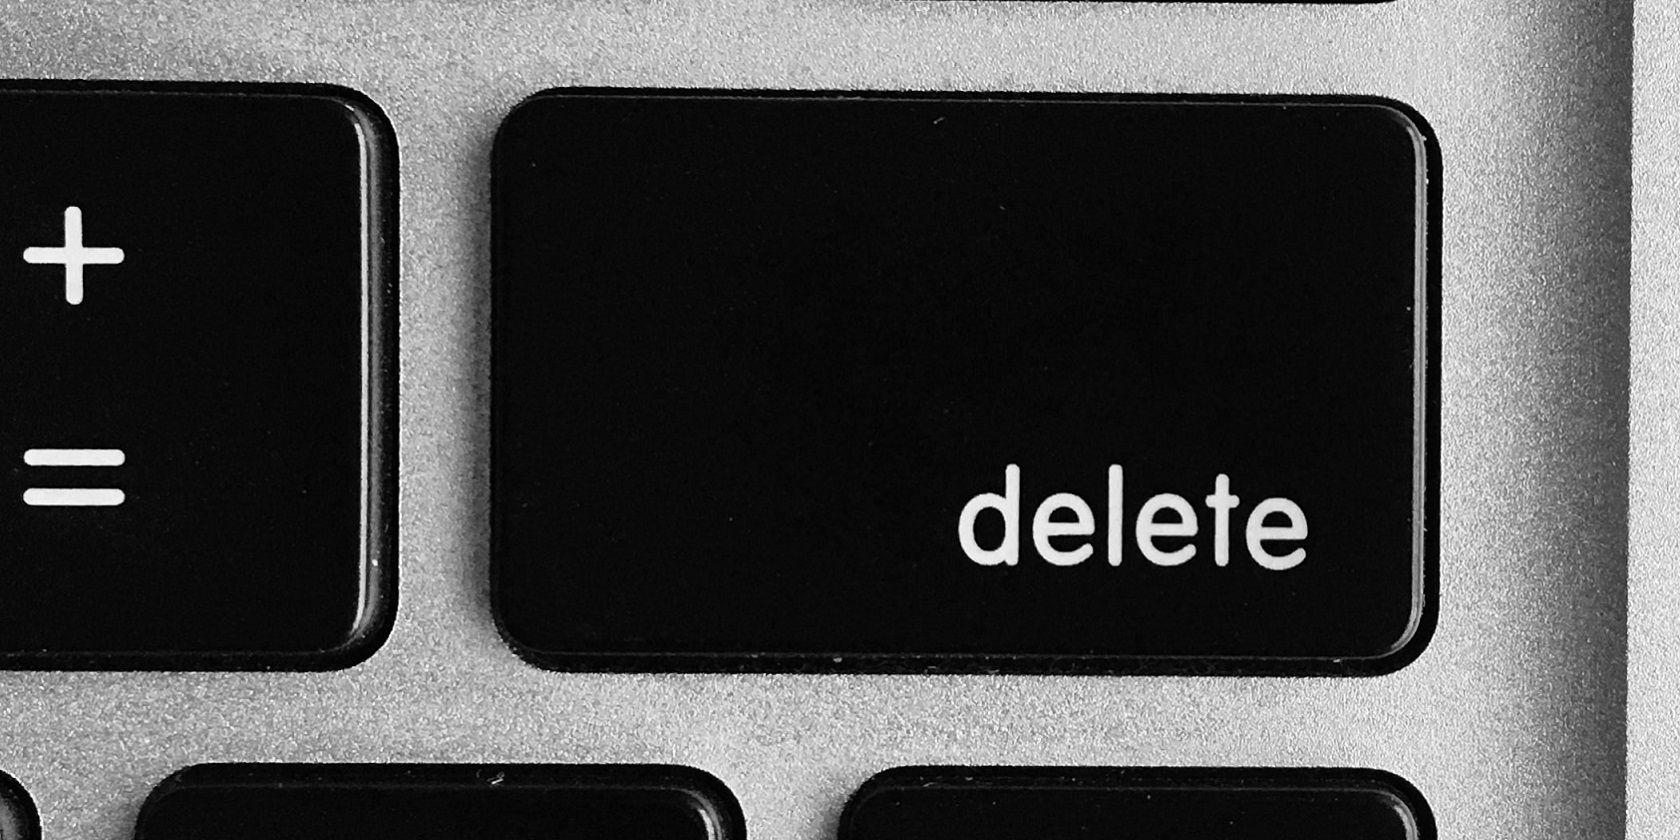 The delete button 